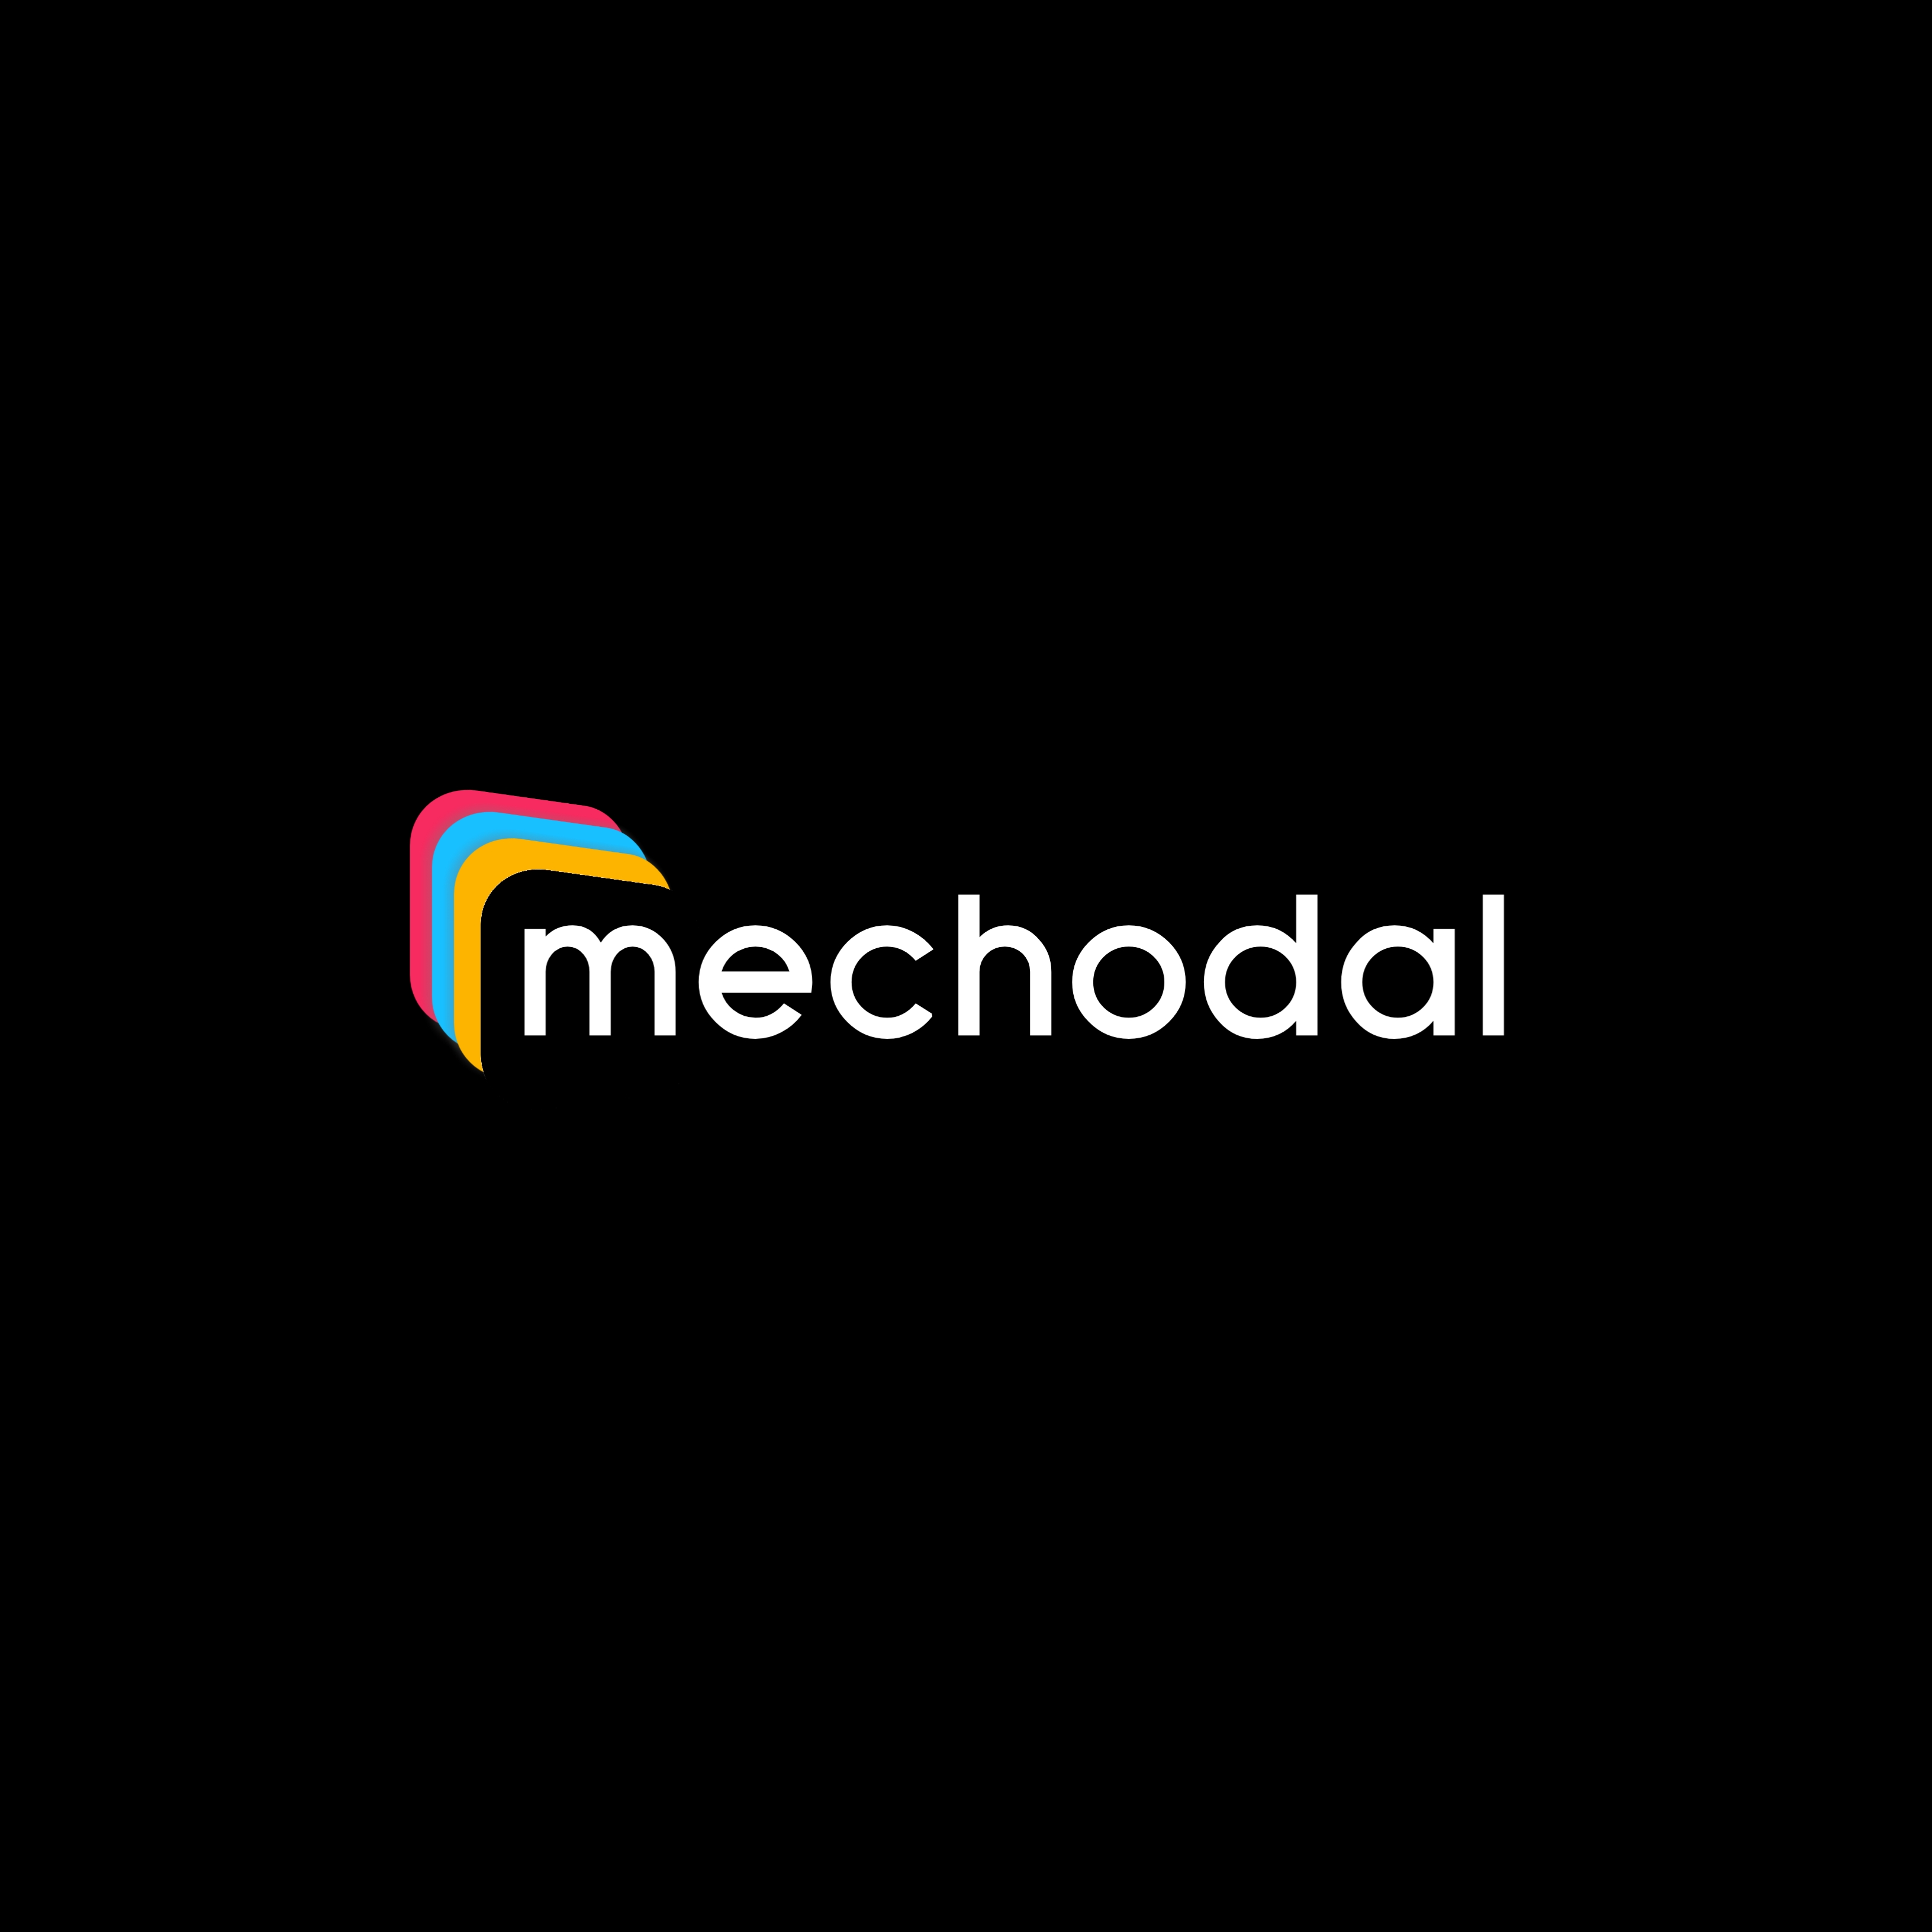 Mechodal Technology